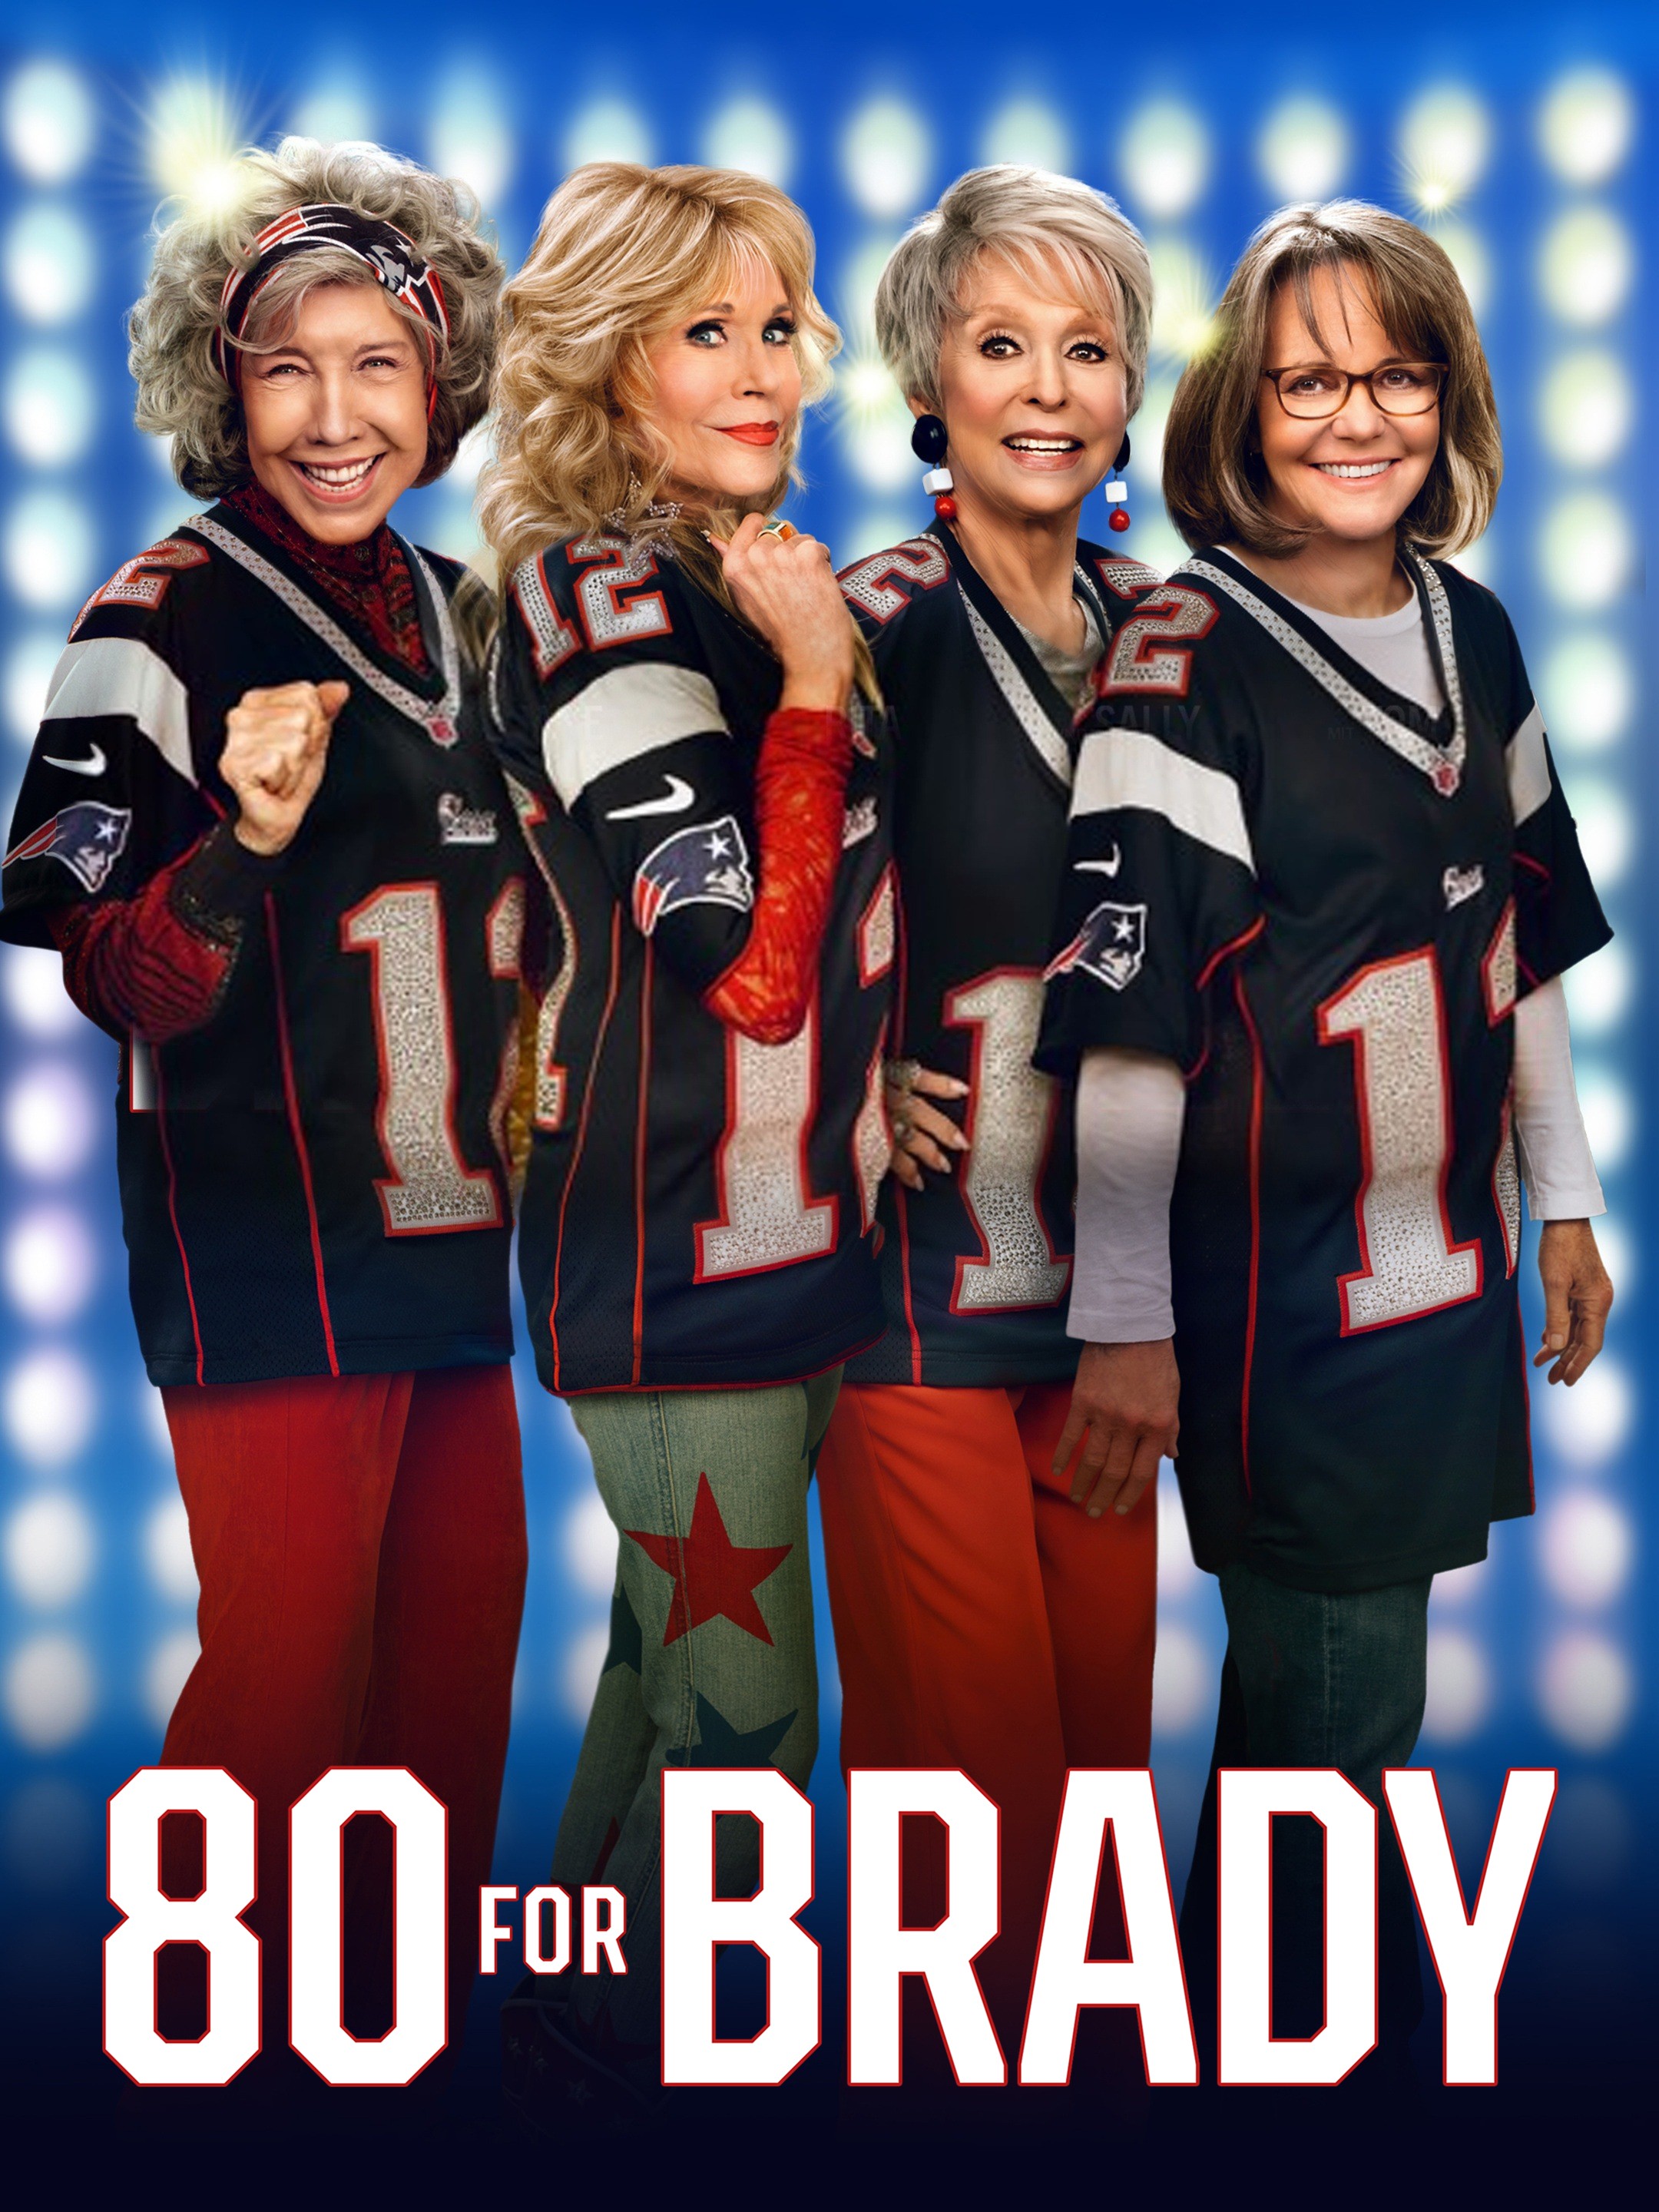 80 for Brady - Wikipedia